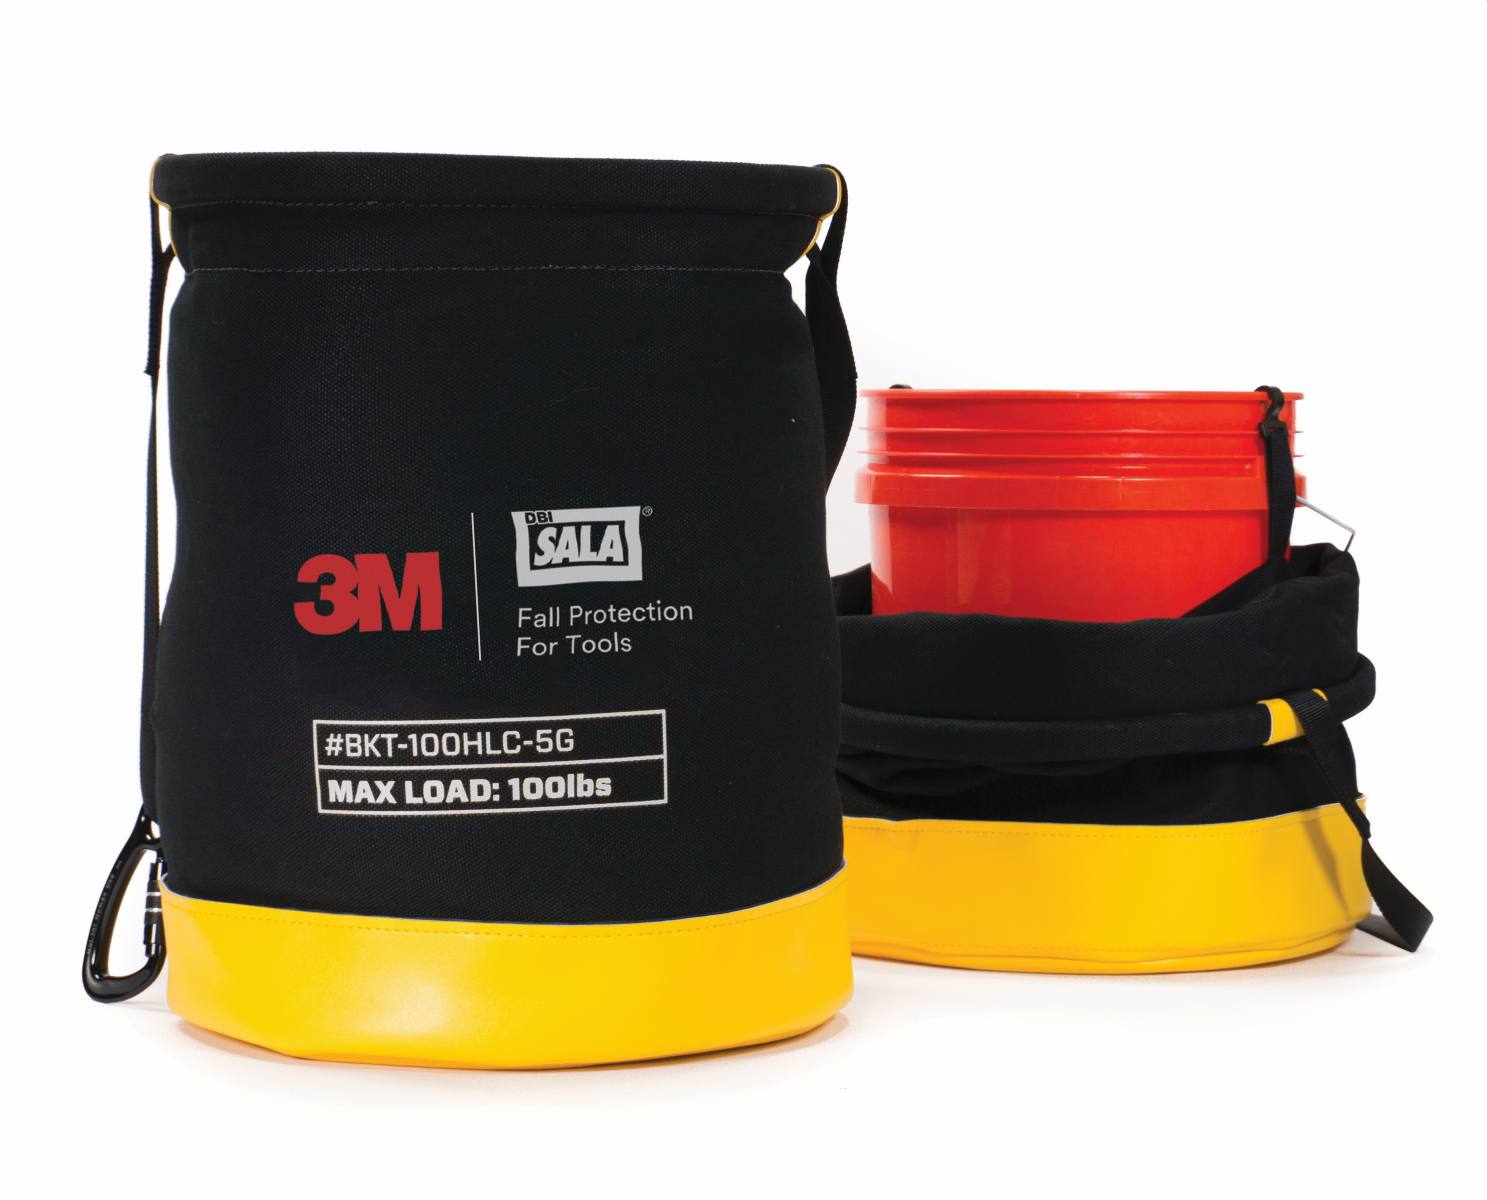 3M DBI-SALA Spezial Transport-Tasche, Segeltuch, Tragegurt, für Eimer bis 19 Liter Fassungsvermögen, max. 45,4 kg Belastung, 38 x 32 cm